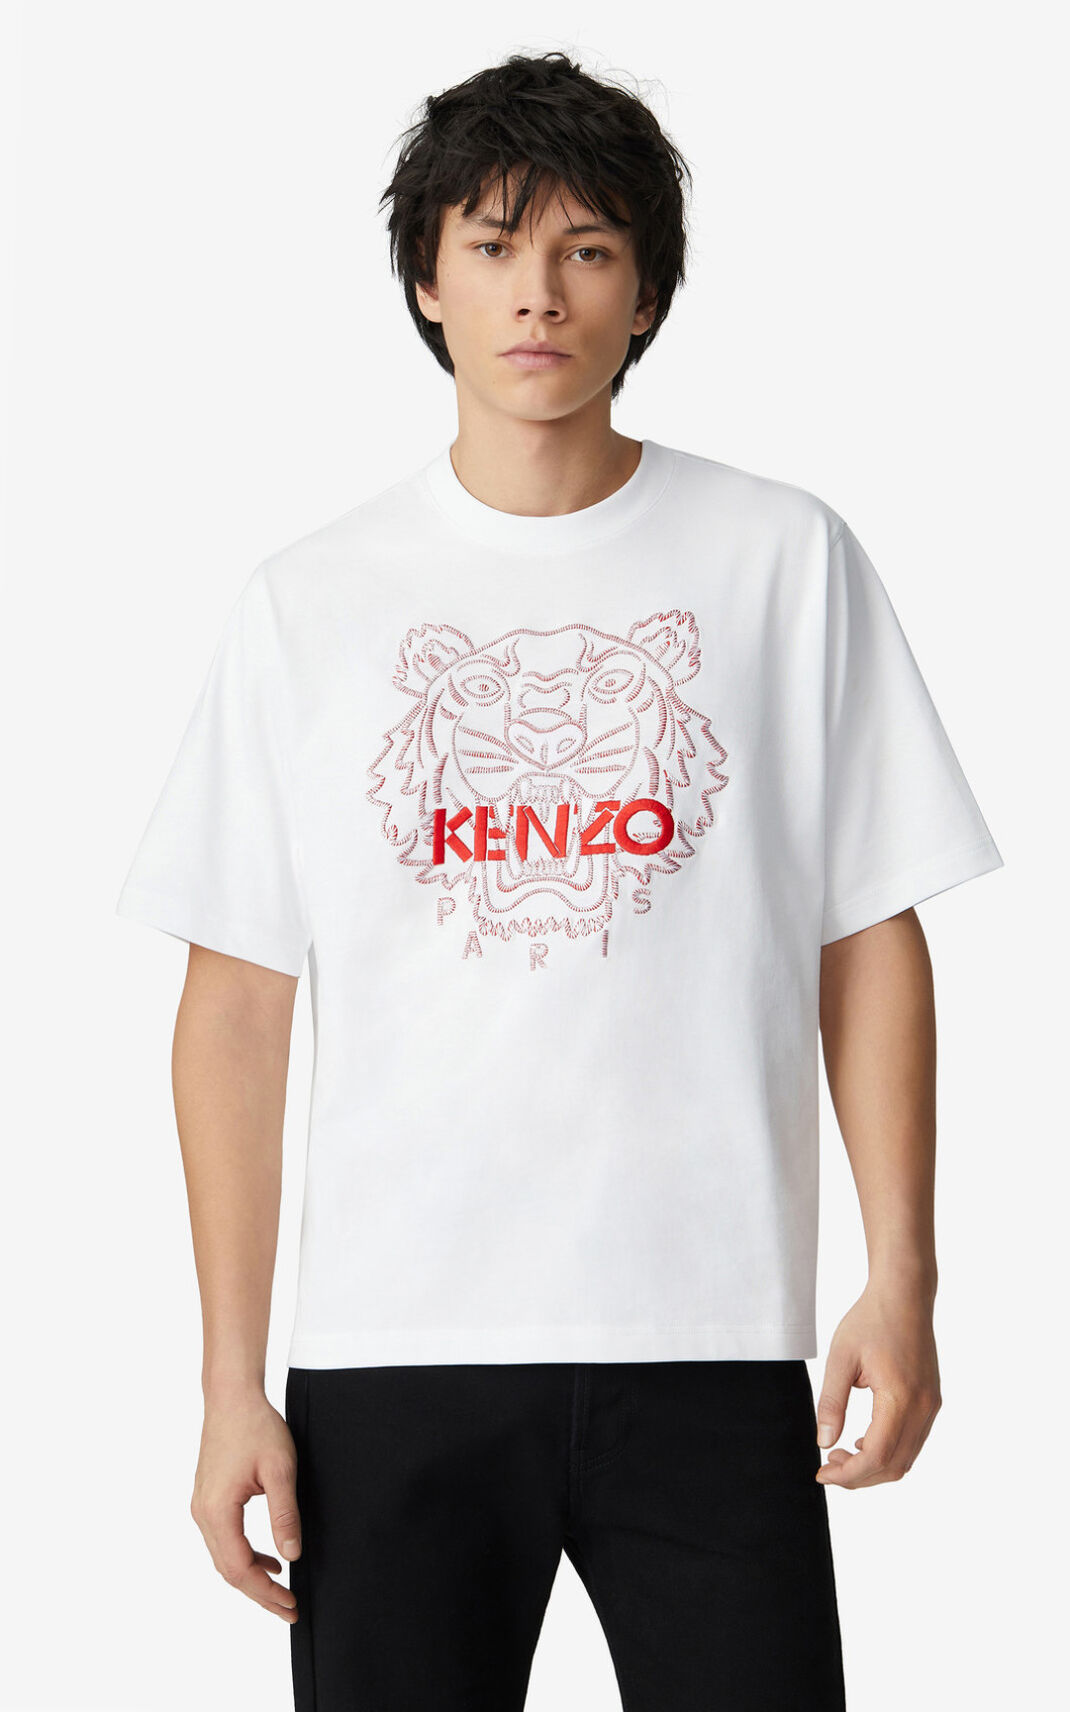 Camisetas Kenzo Tiger loose fitting Hombre Blancas - SKU.7073096